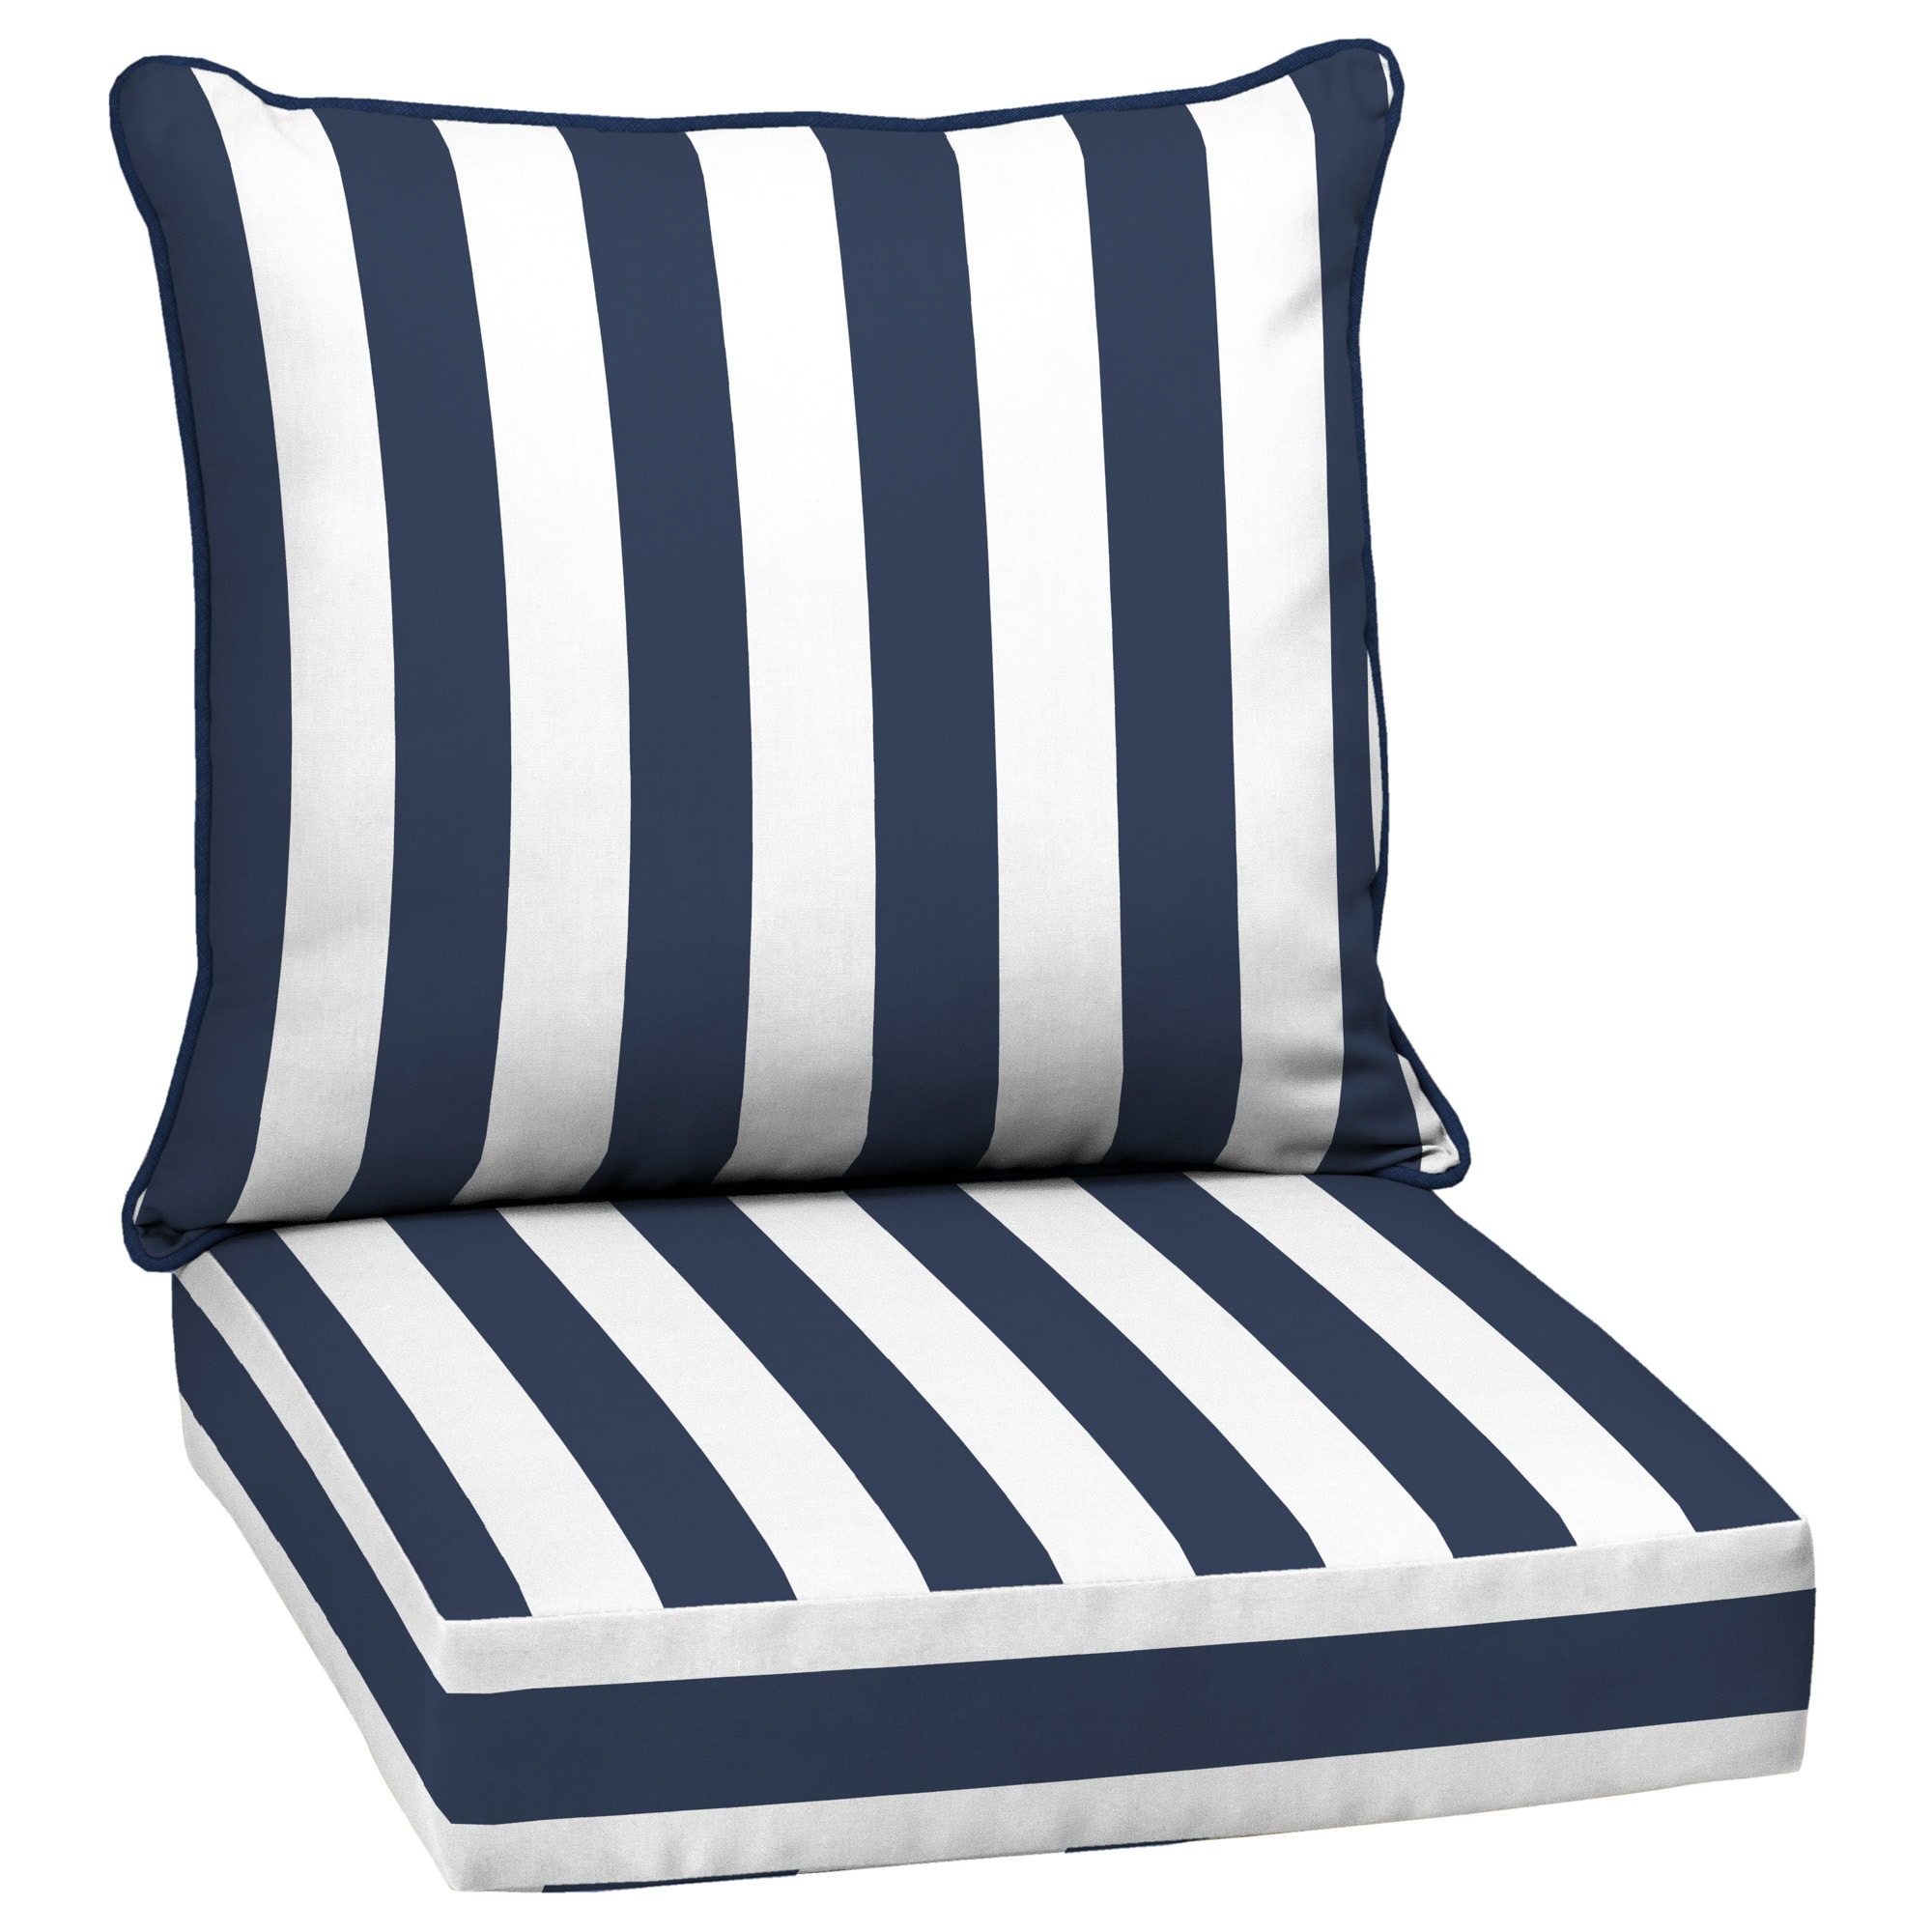 Classic Accessories 21 in. W x 19 in. D x 22.5 in. H Square Seat Back Patio Chair Cushion in Soft Beige, Stripe